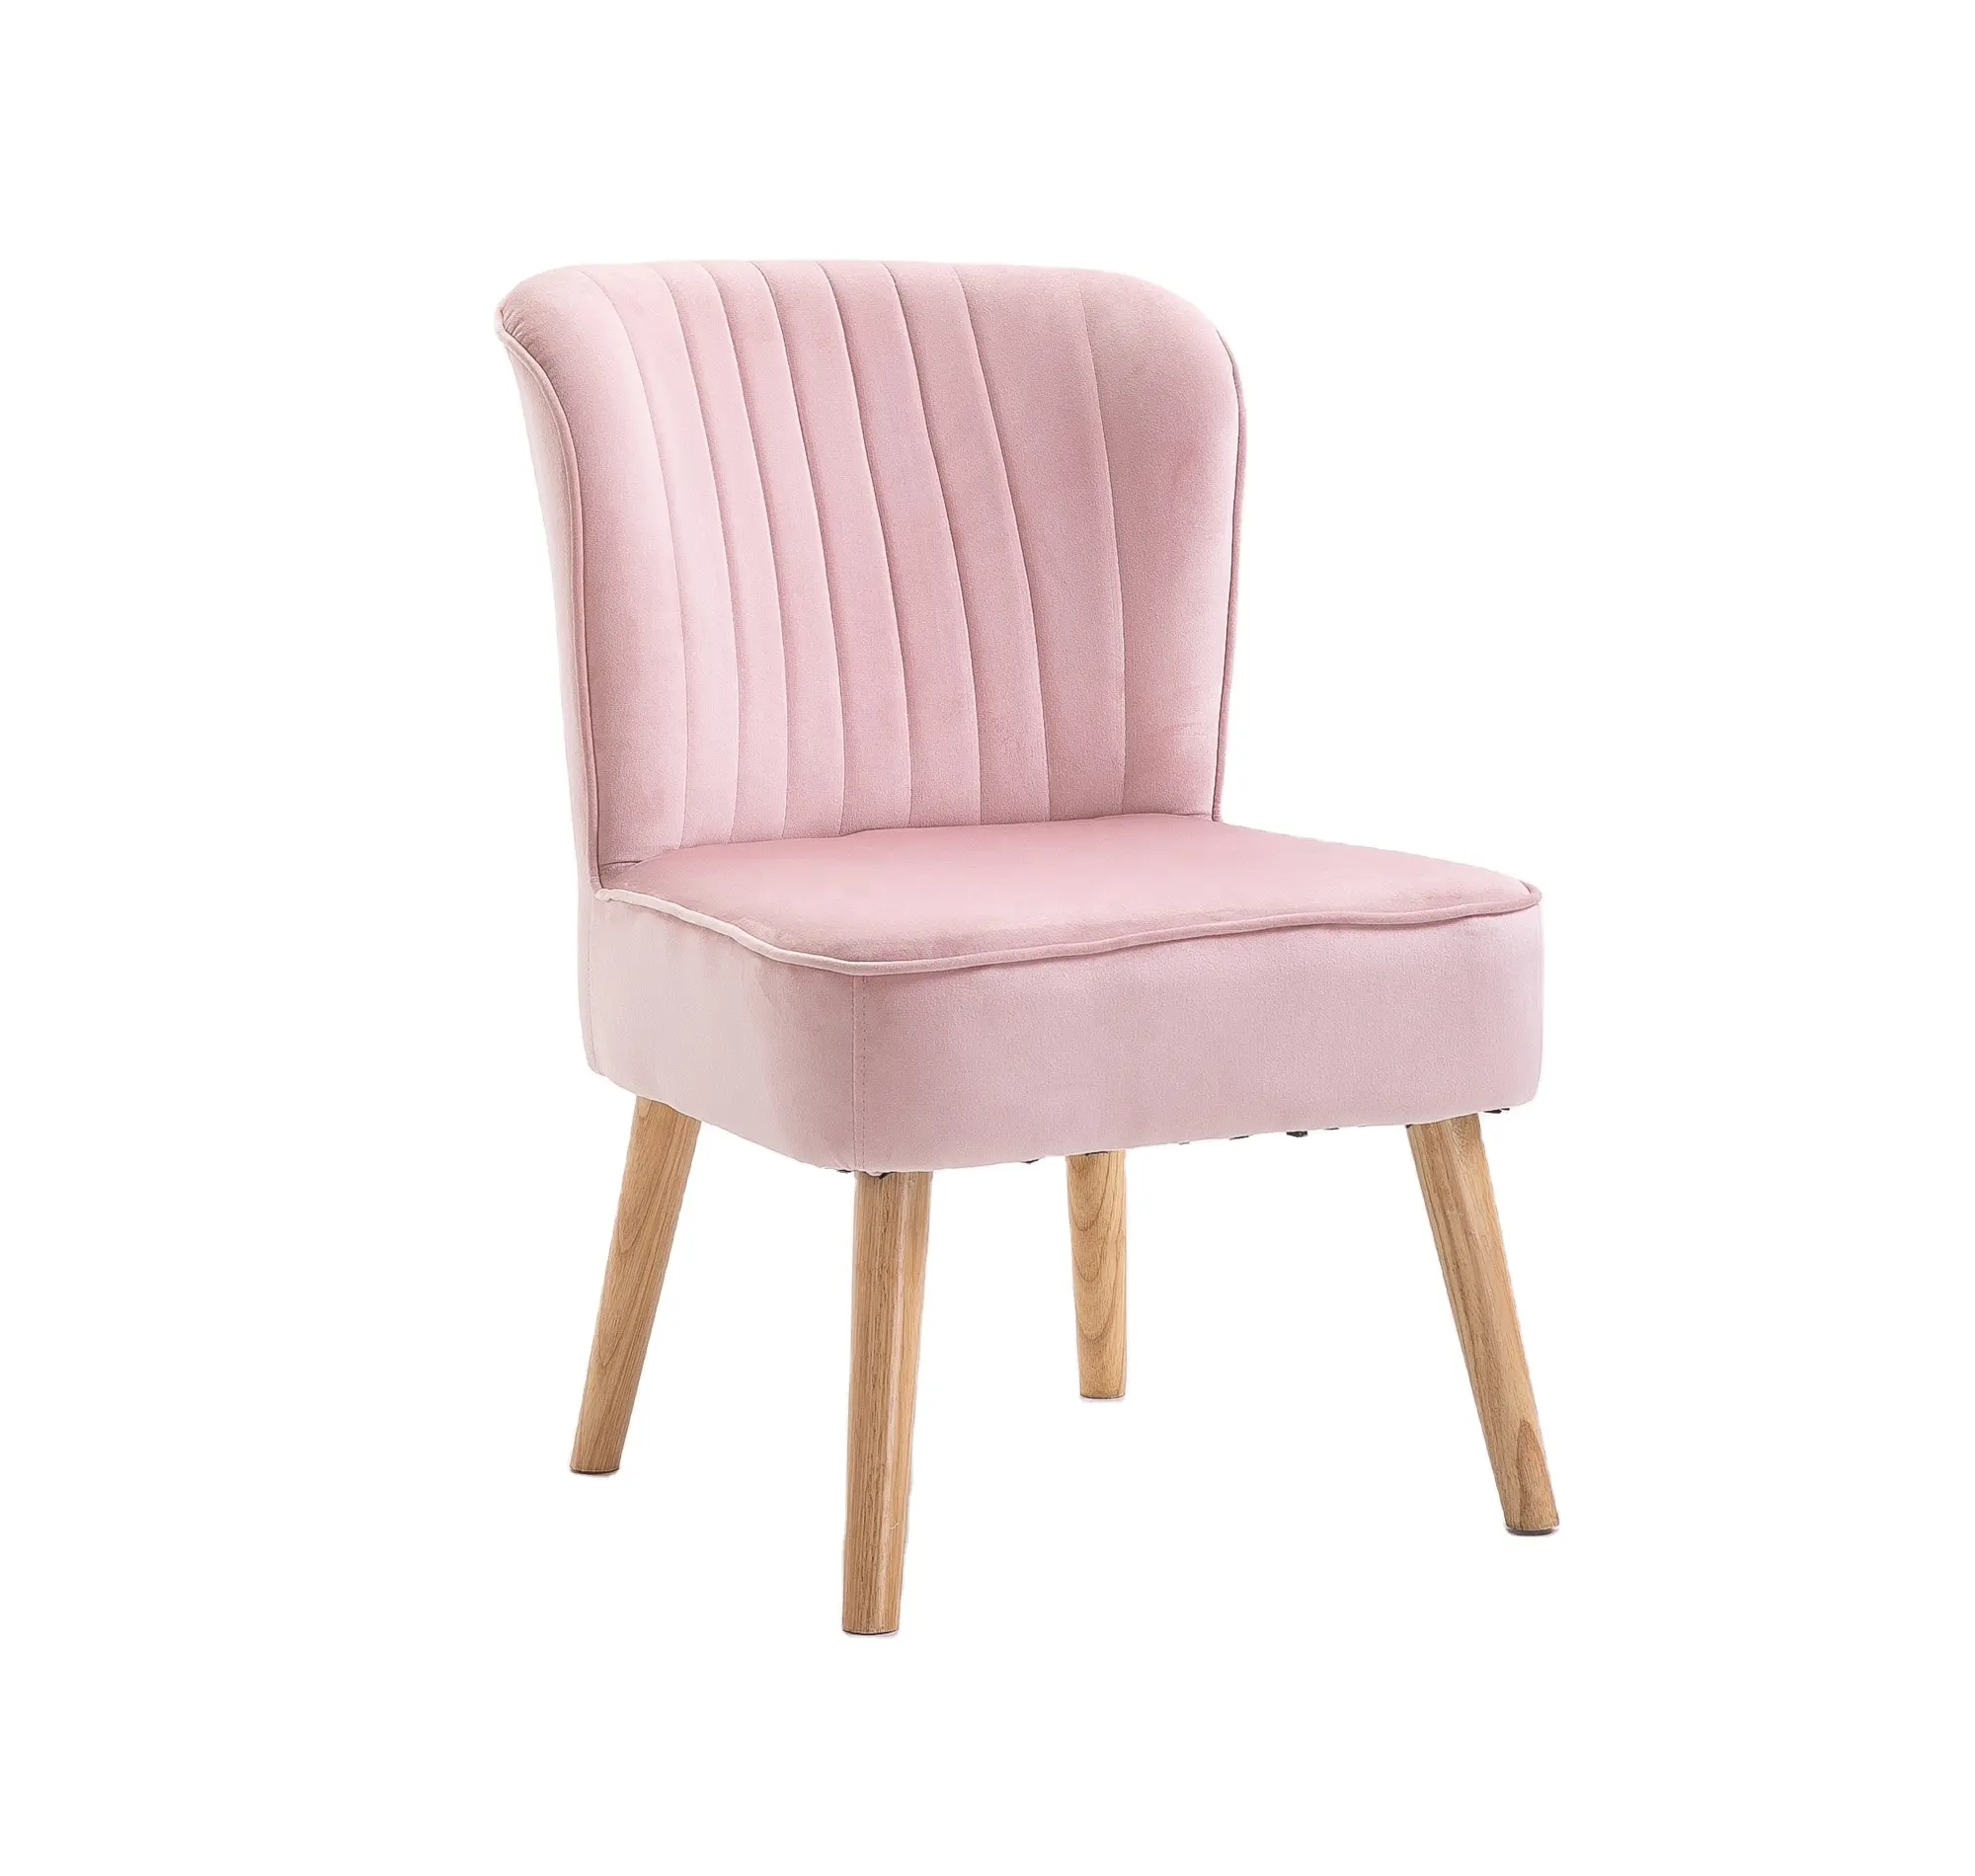 Одноместный диван Partner, удобное мягкое розовое кресло с подлокотниками, стул из акцентной ткани для гостиной